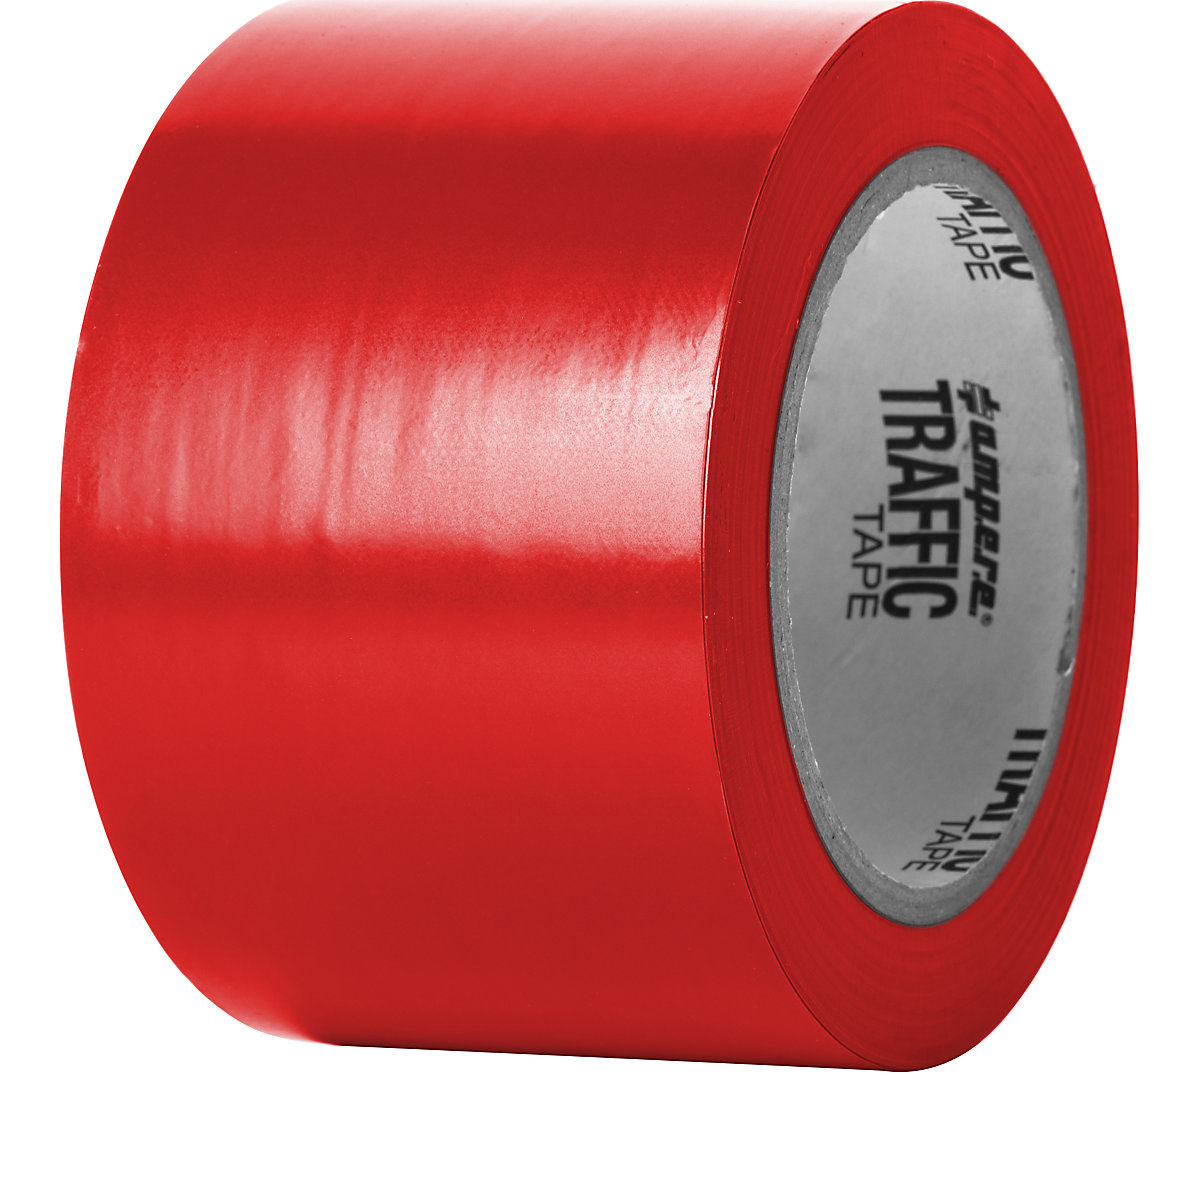 Talni označevalni trak – Ampere, širina 75 mm, rdeče barve-7